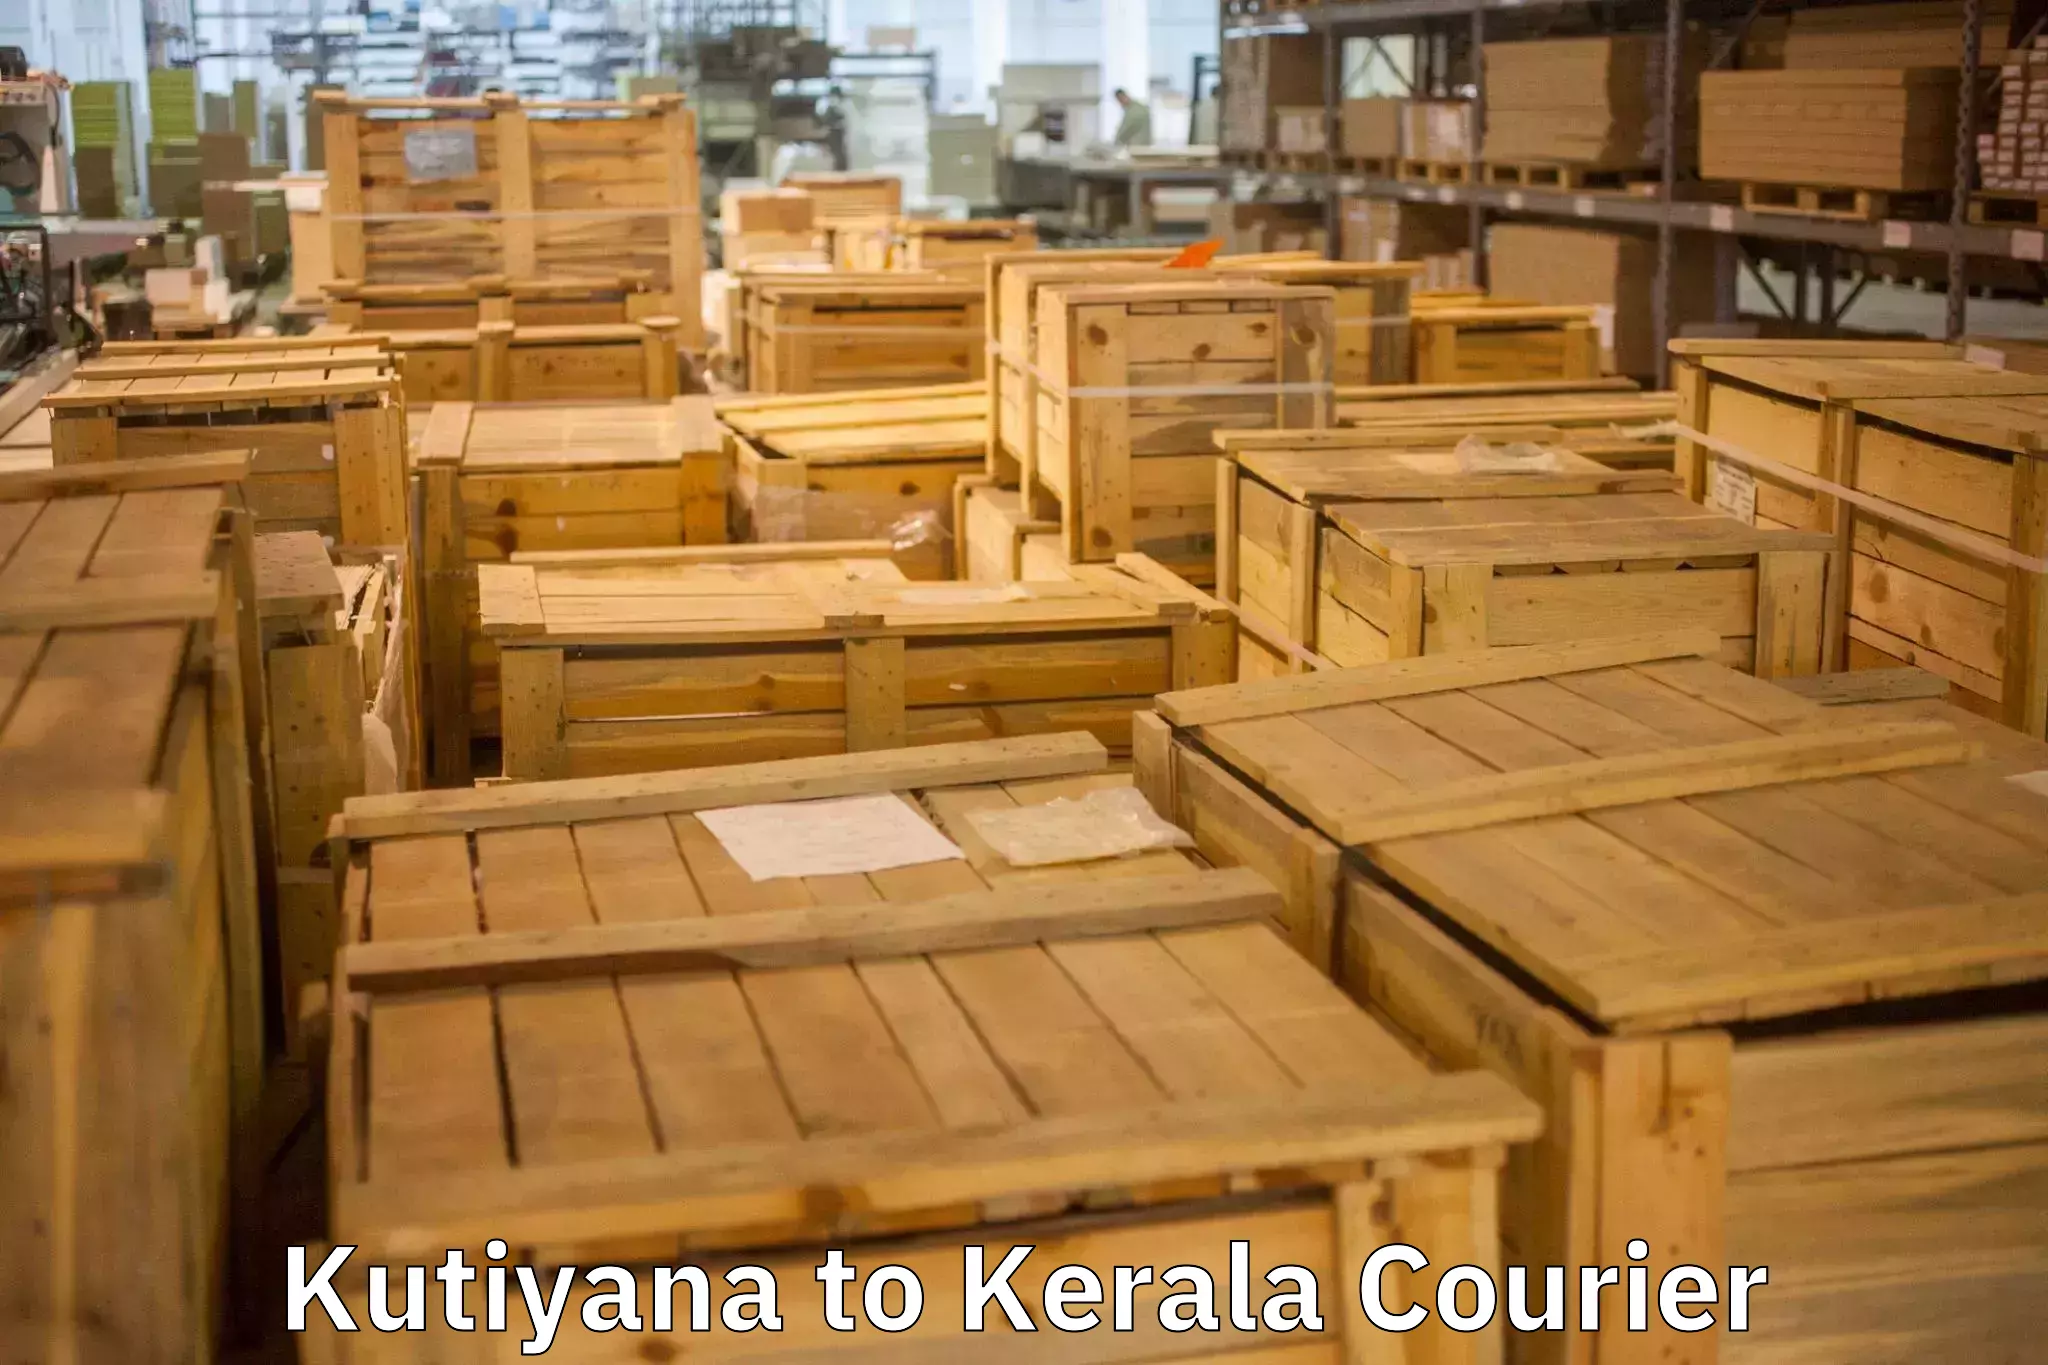 Furniture delivery service Kutiyana to Kunnamkulam